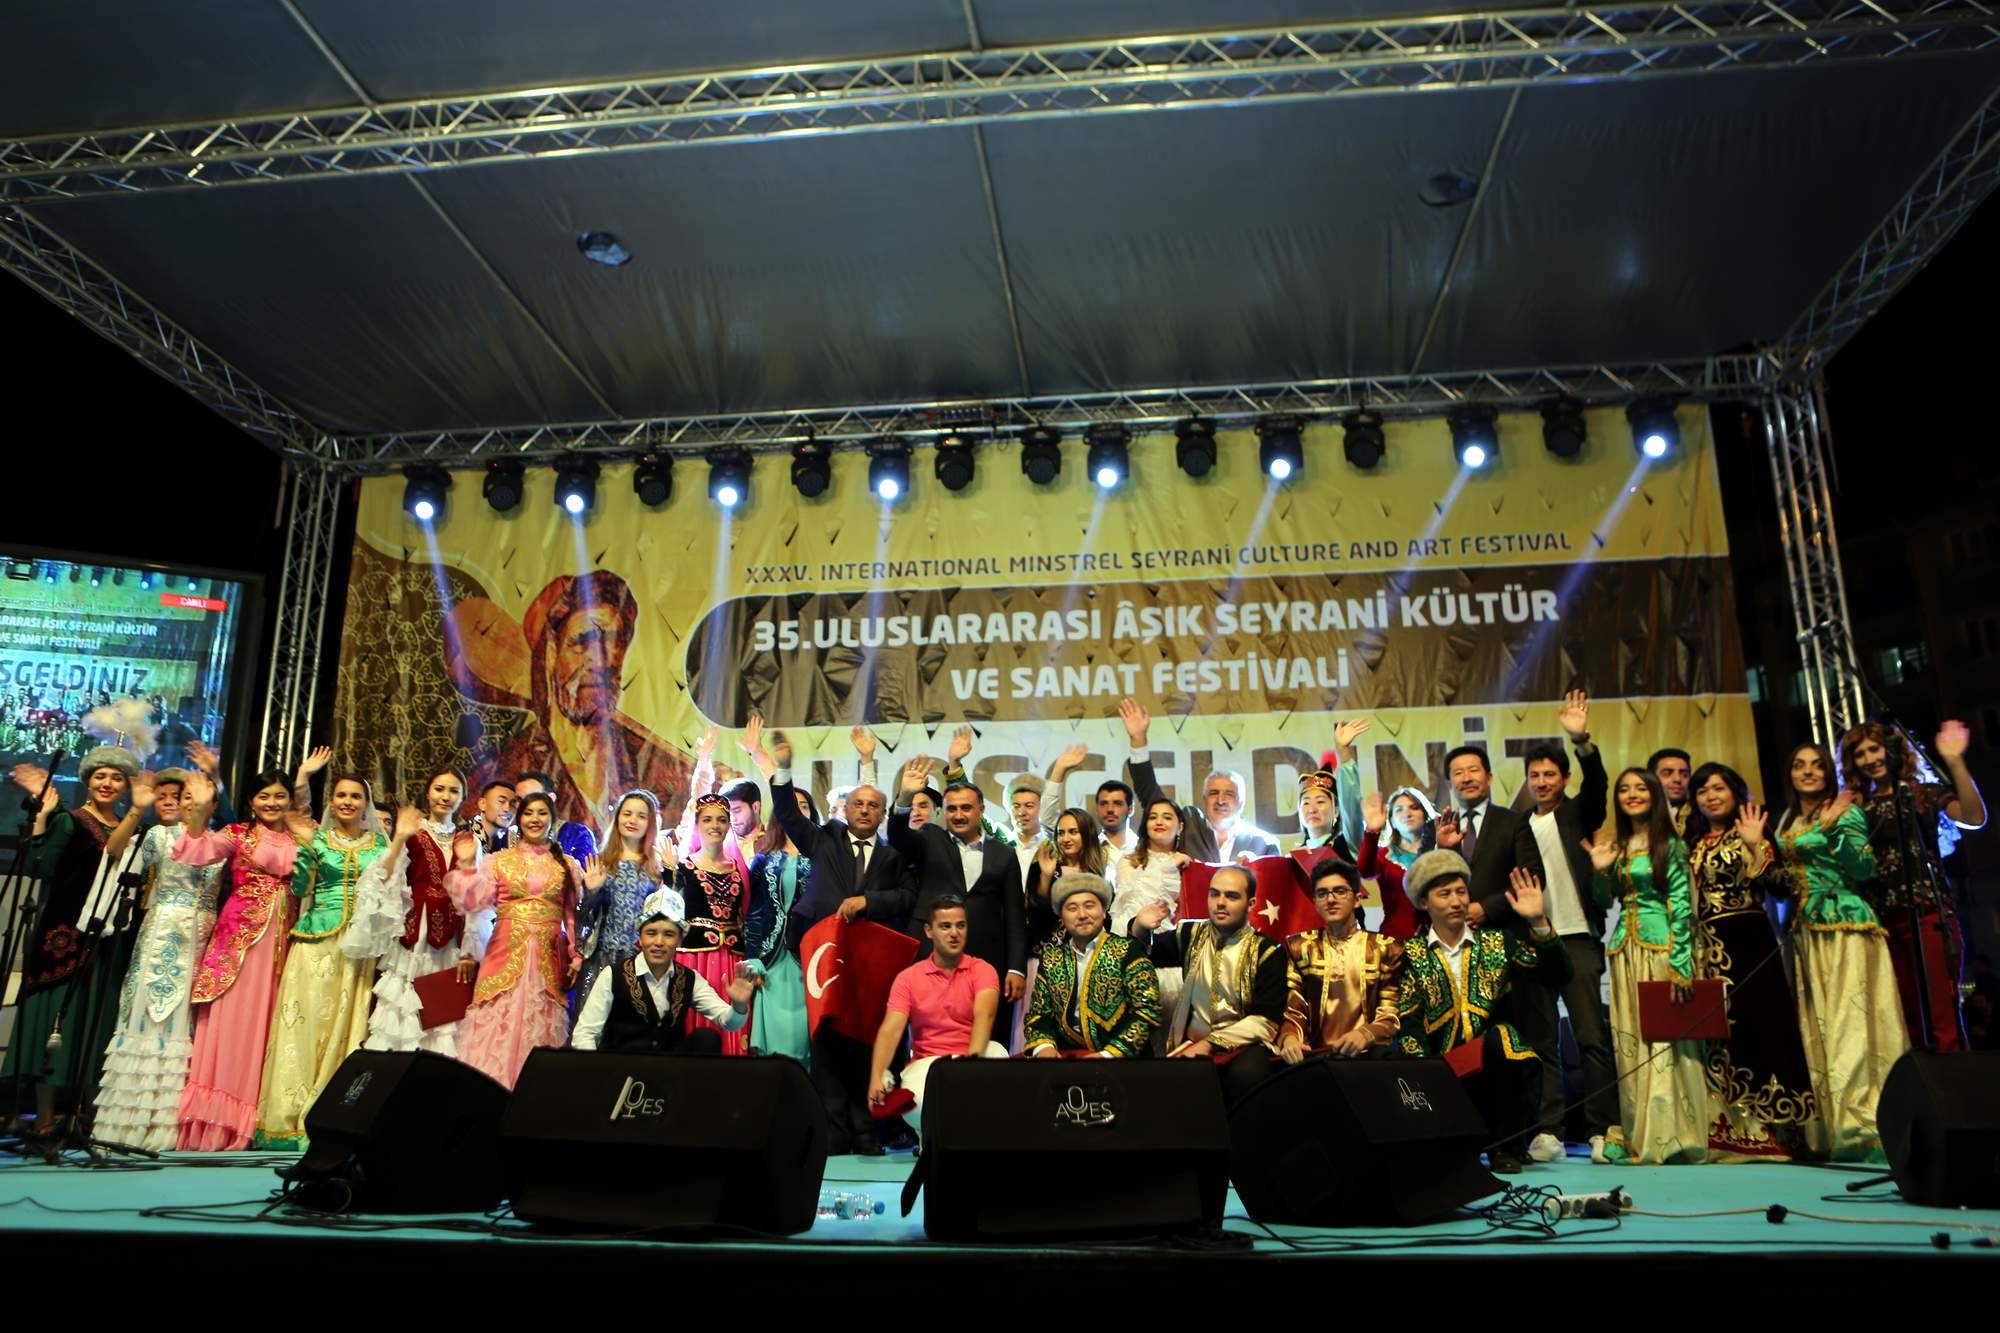 Aşık Seyrani Kültür ve Sanat Festivali finali yapıldı